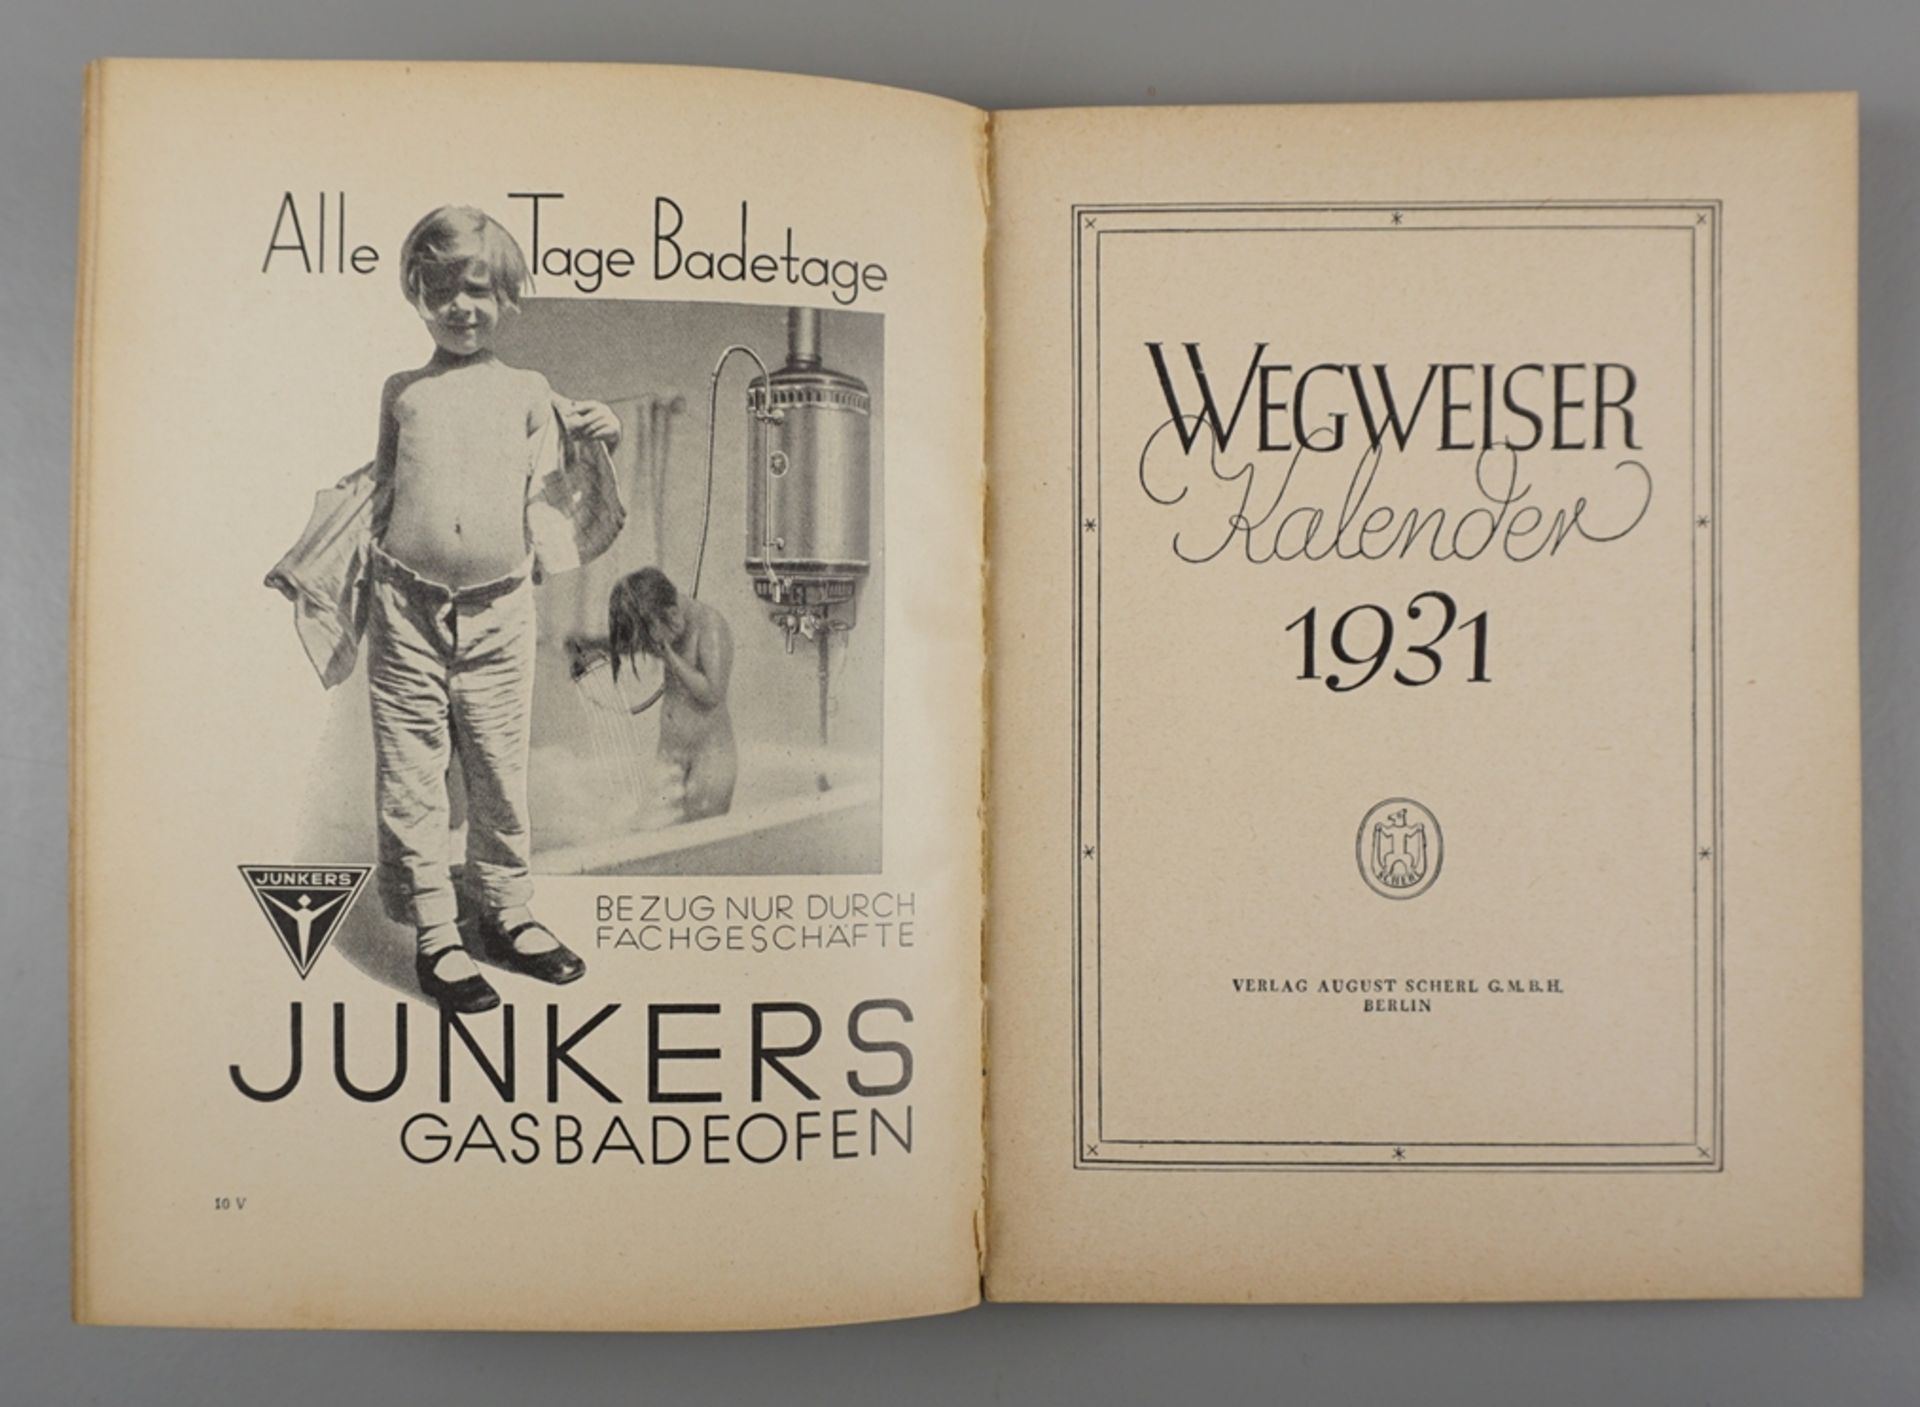 2 Kalender, Verlag August Scherl, Berlin, 1931 und 1932 - Image 3 of 3